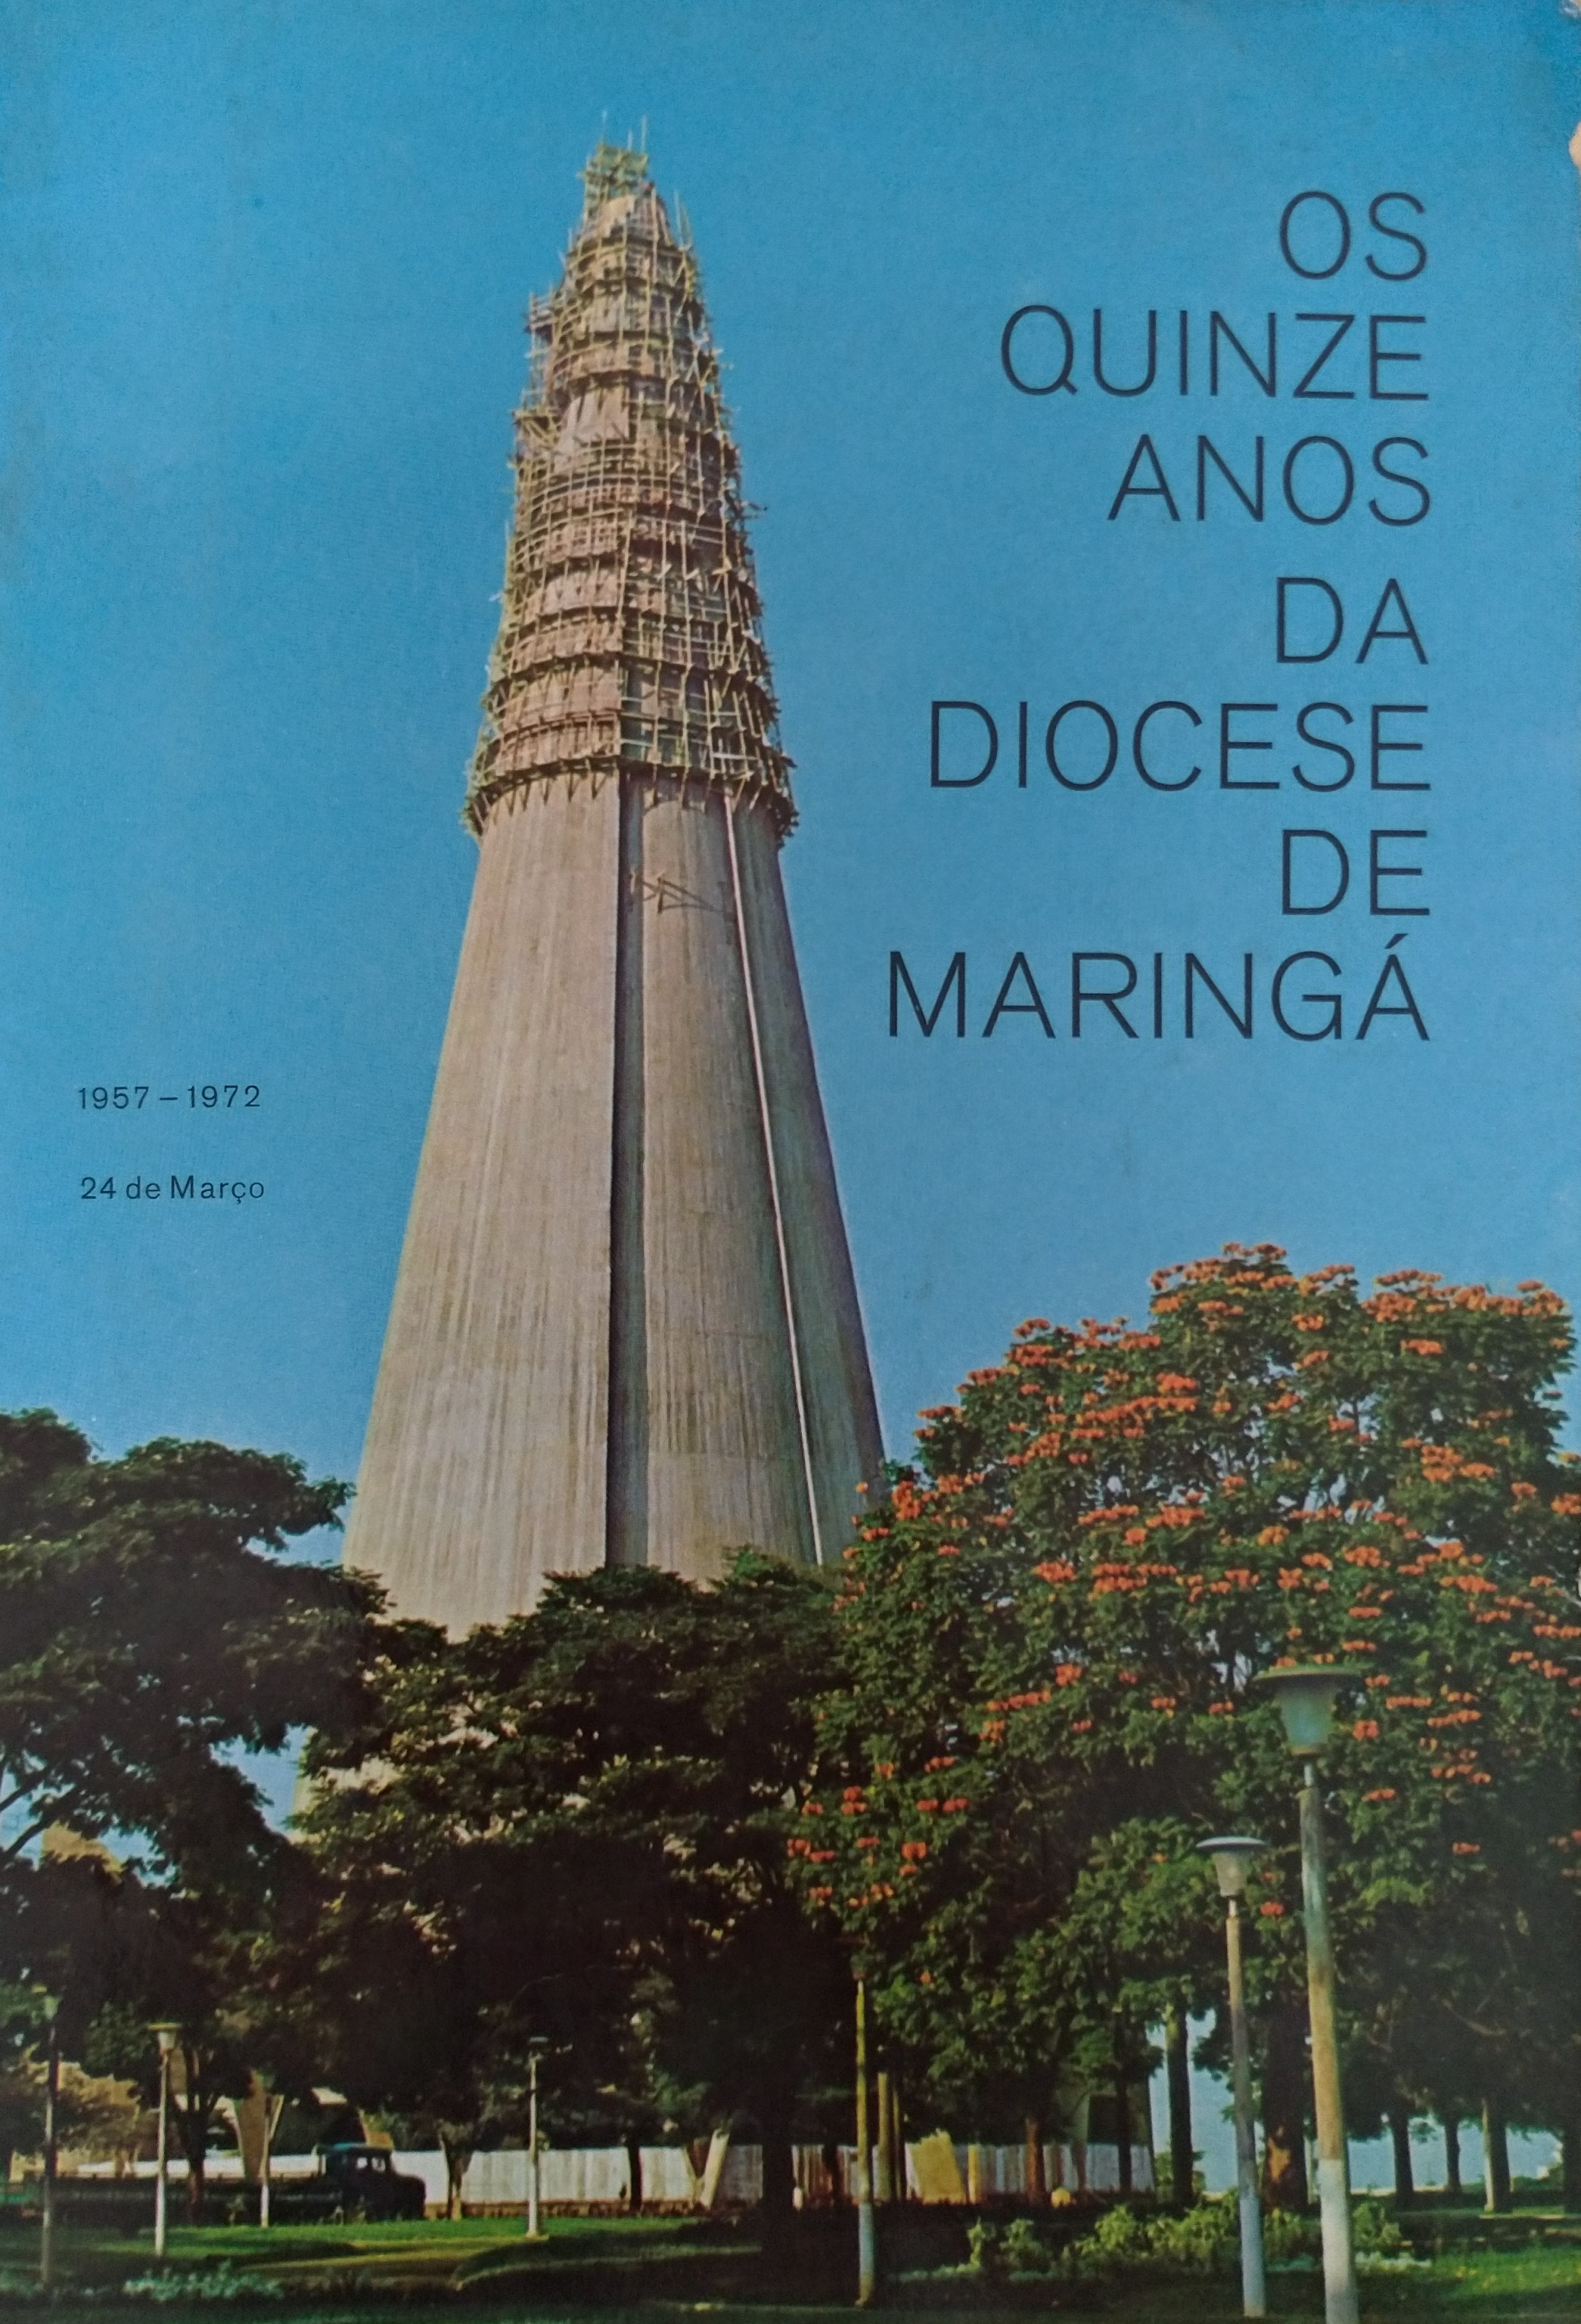 Os 15 anos da Diocese de Maringá, em 1972